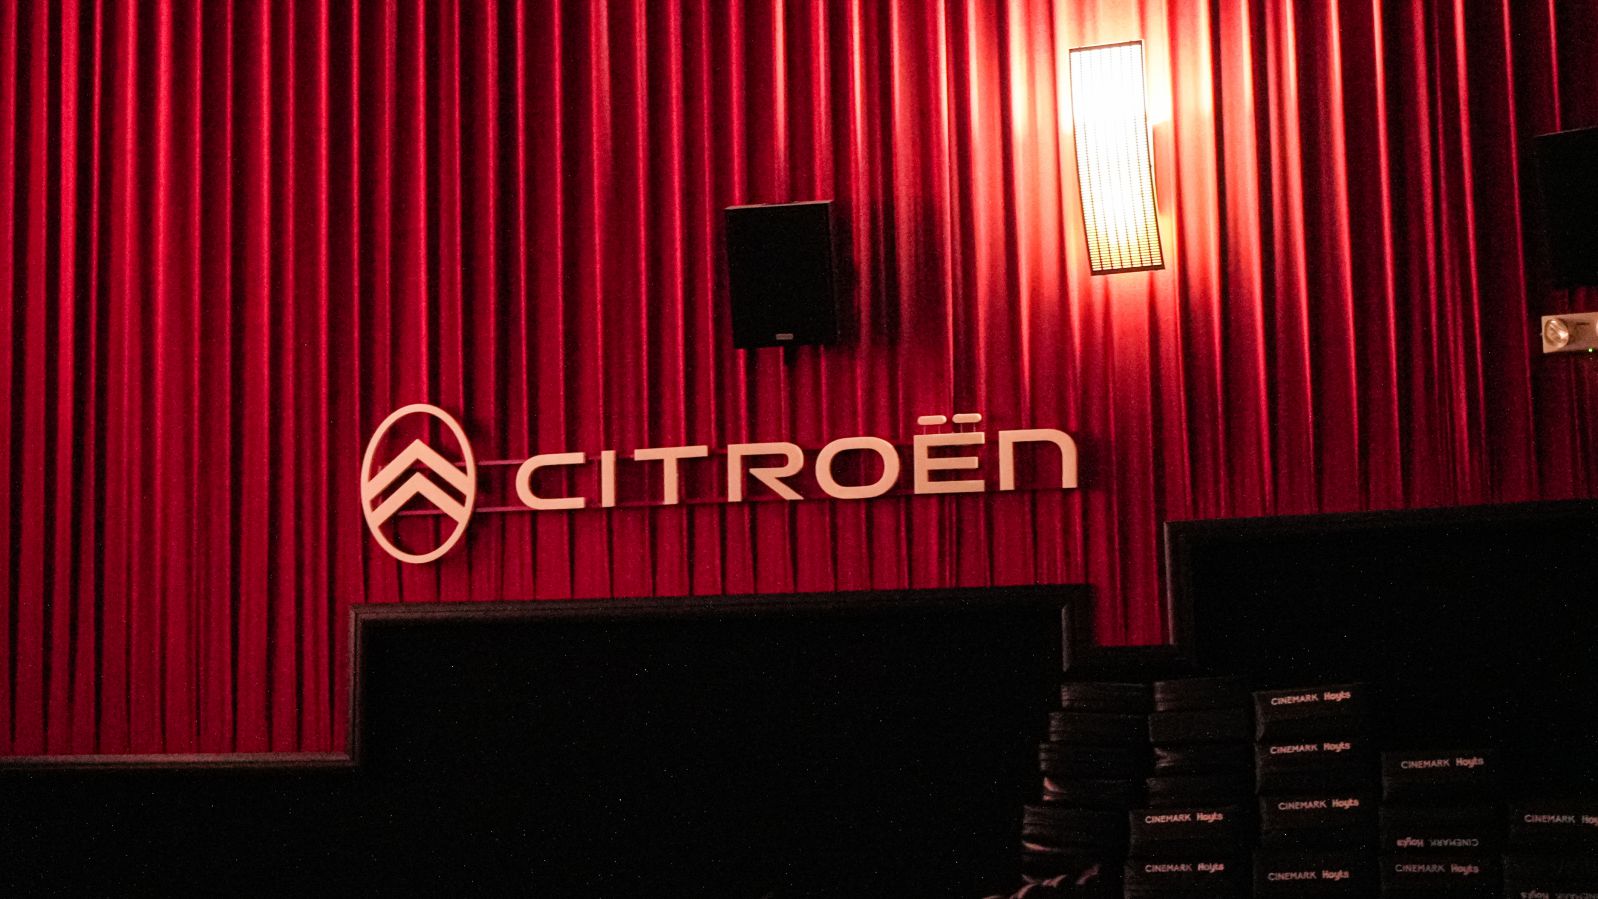 El Citroën C4 Cactus te invita al cine junto a Cinemark Hoyts